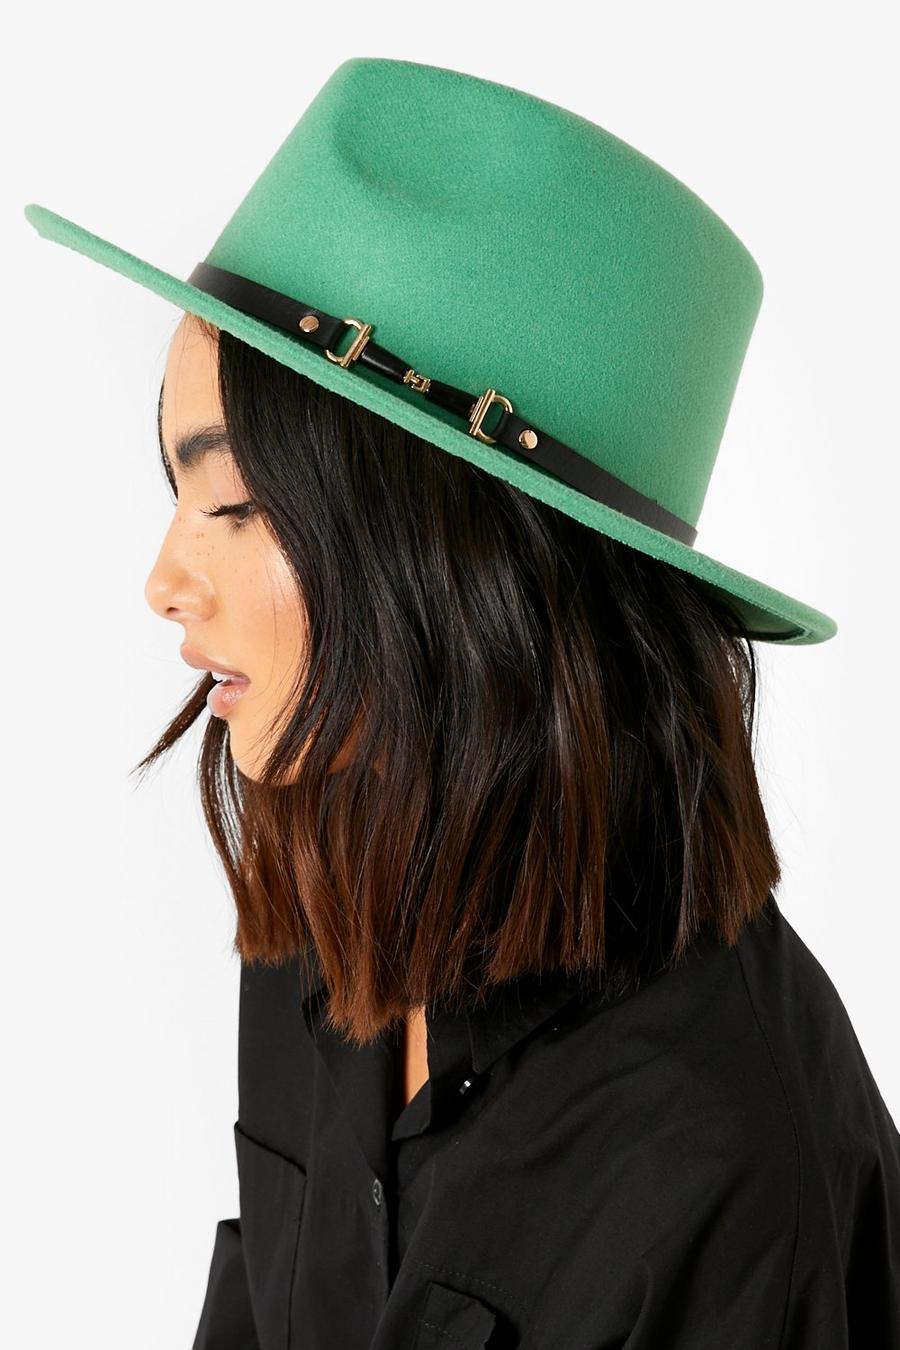 Bottle green gerde כובע פדורה בייסיק עם עיטור סרט ופס ירוק 